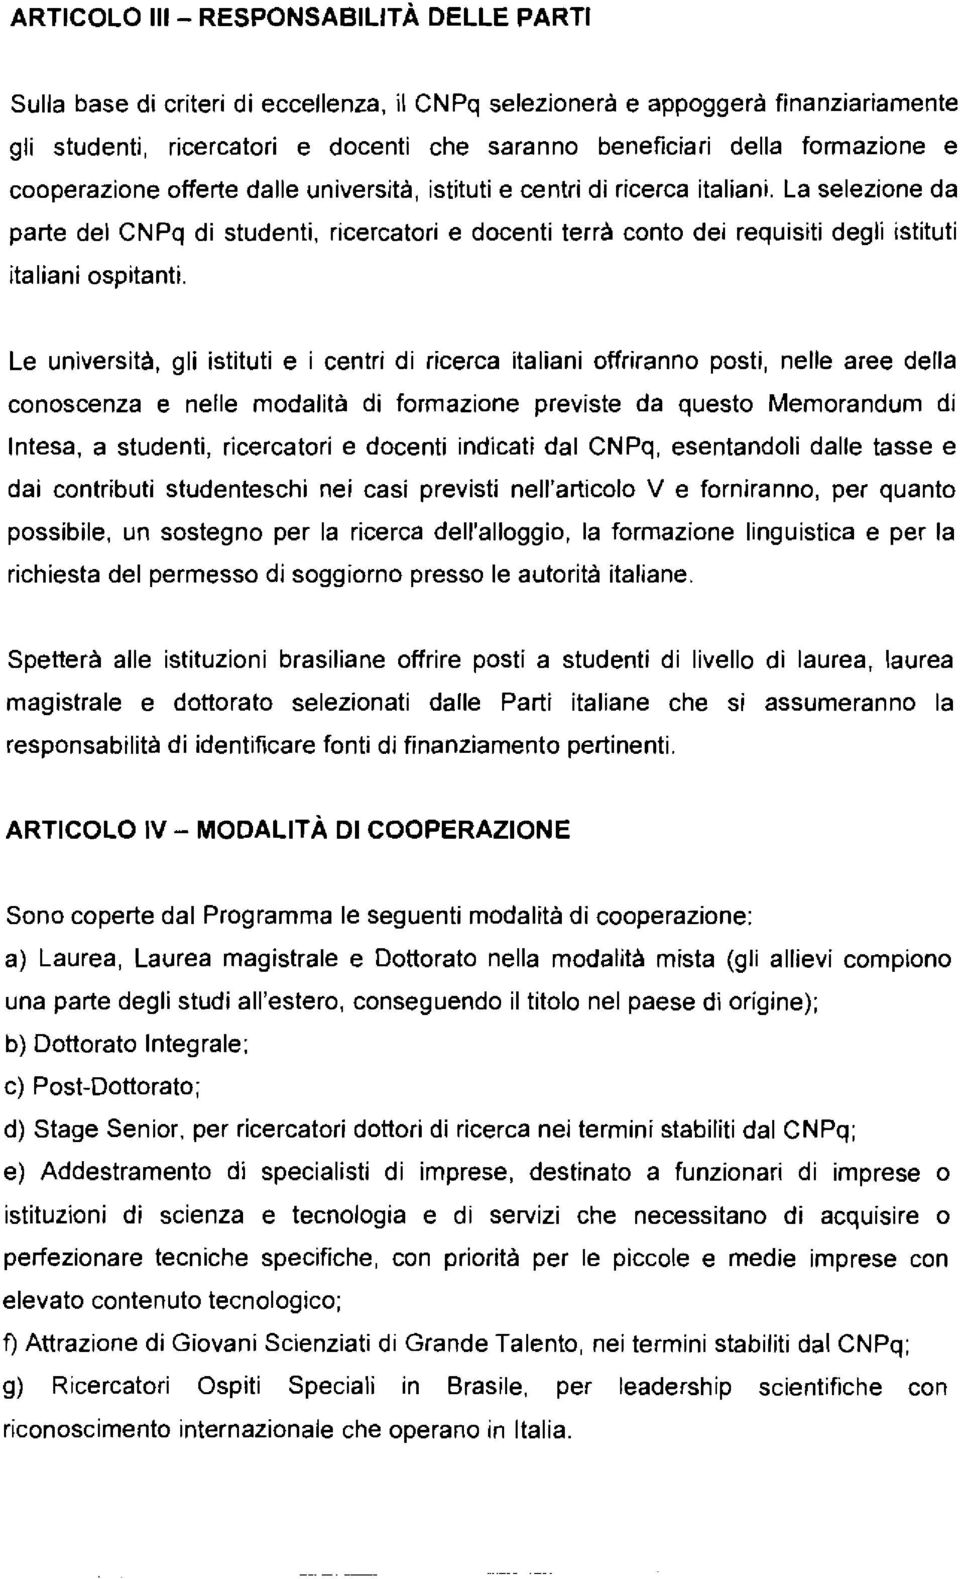 La selezione da parte del CNPq di studenti, ricercatori e docenti terrà conto dei requisiti degli istituti italiani ospitanti.